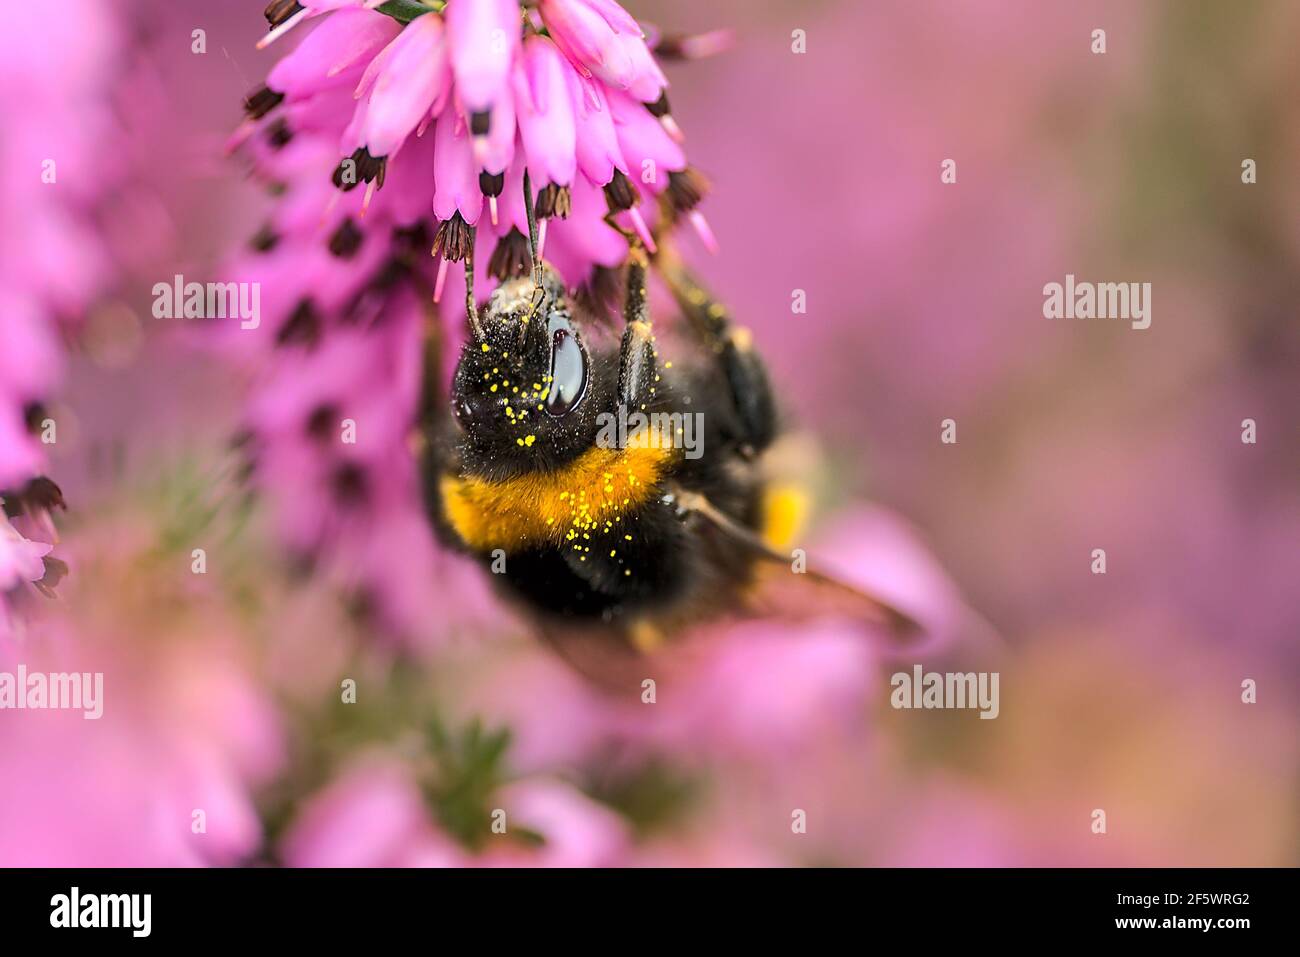 Belle vue macro de l'abeille bourdonneuse, pollinisateur efficace, (Bombus) collectant le pollen des fleurs de bruyère en forme de cloche rose (Erica cinerea), Dublin Banque D'Images